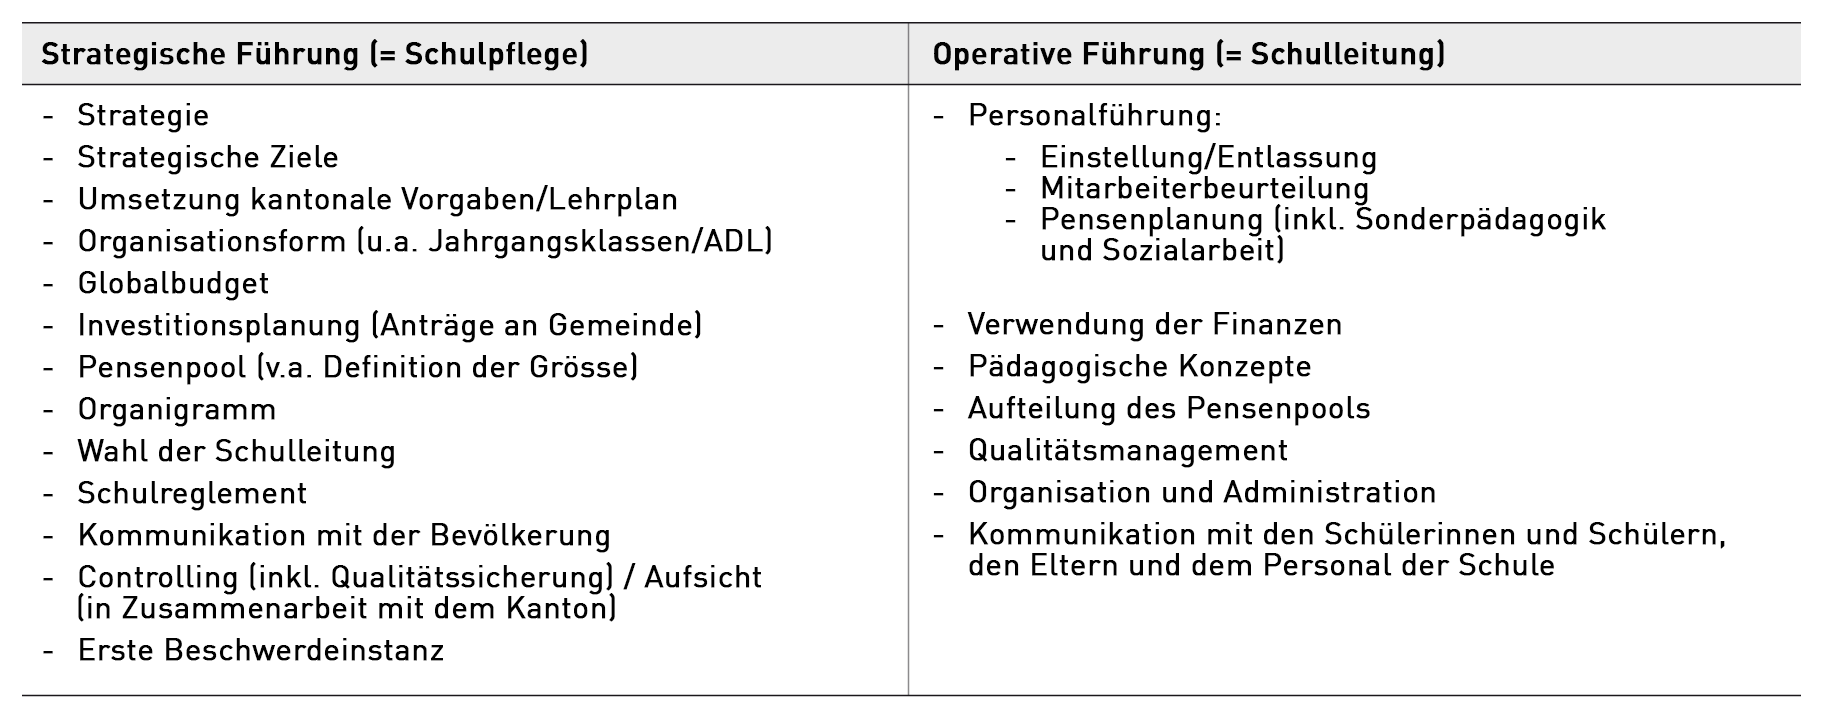 Tabelle mit Inhalten der strategischen und der operativen Führung